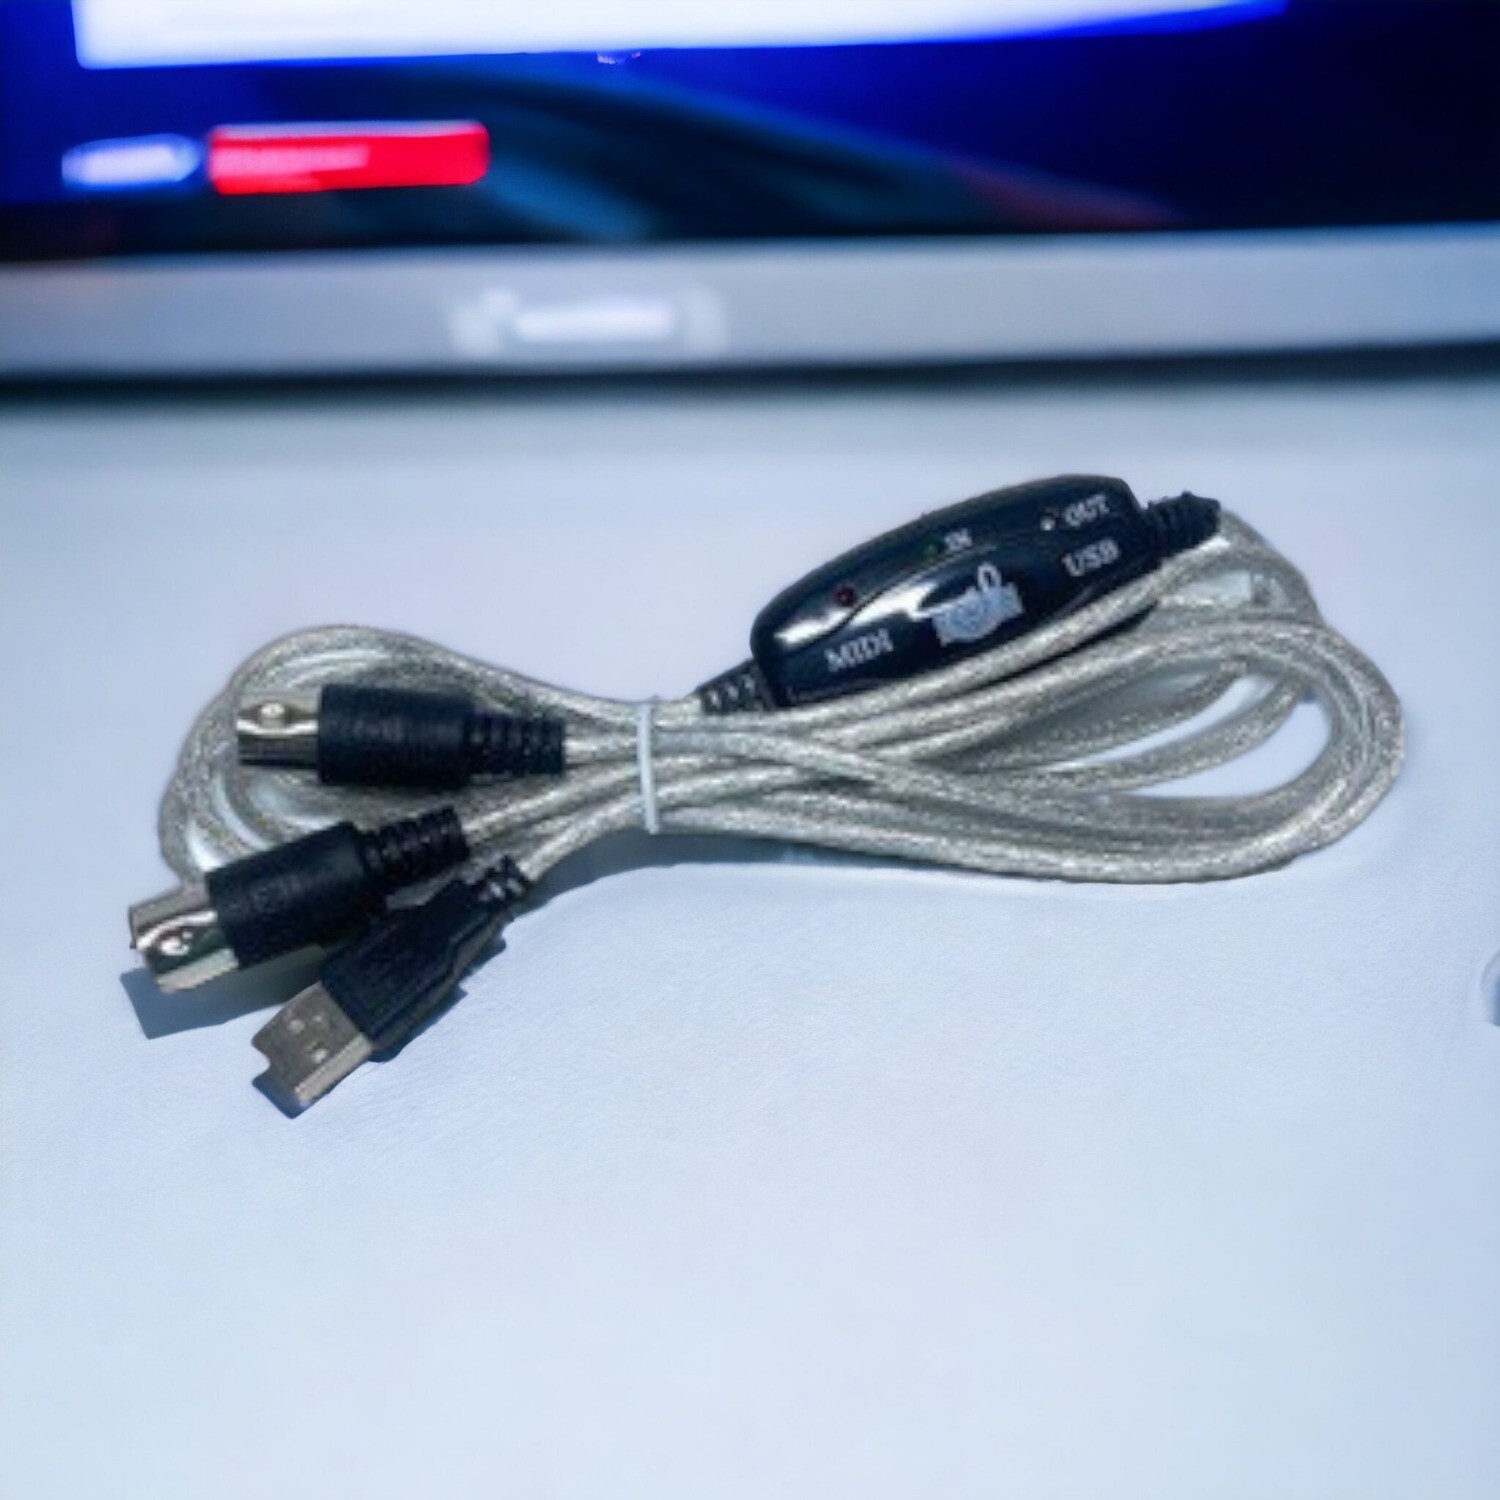 Linq Midi to USB Cable - L'interfaccia perfetta per la tua musica digitale.